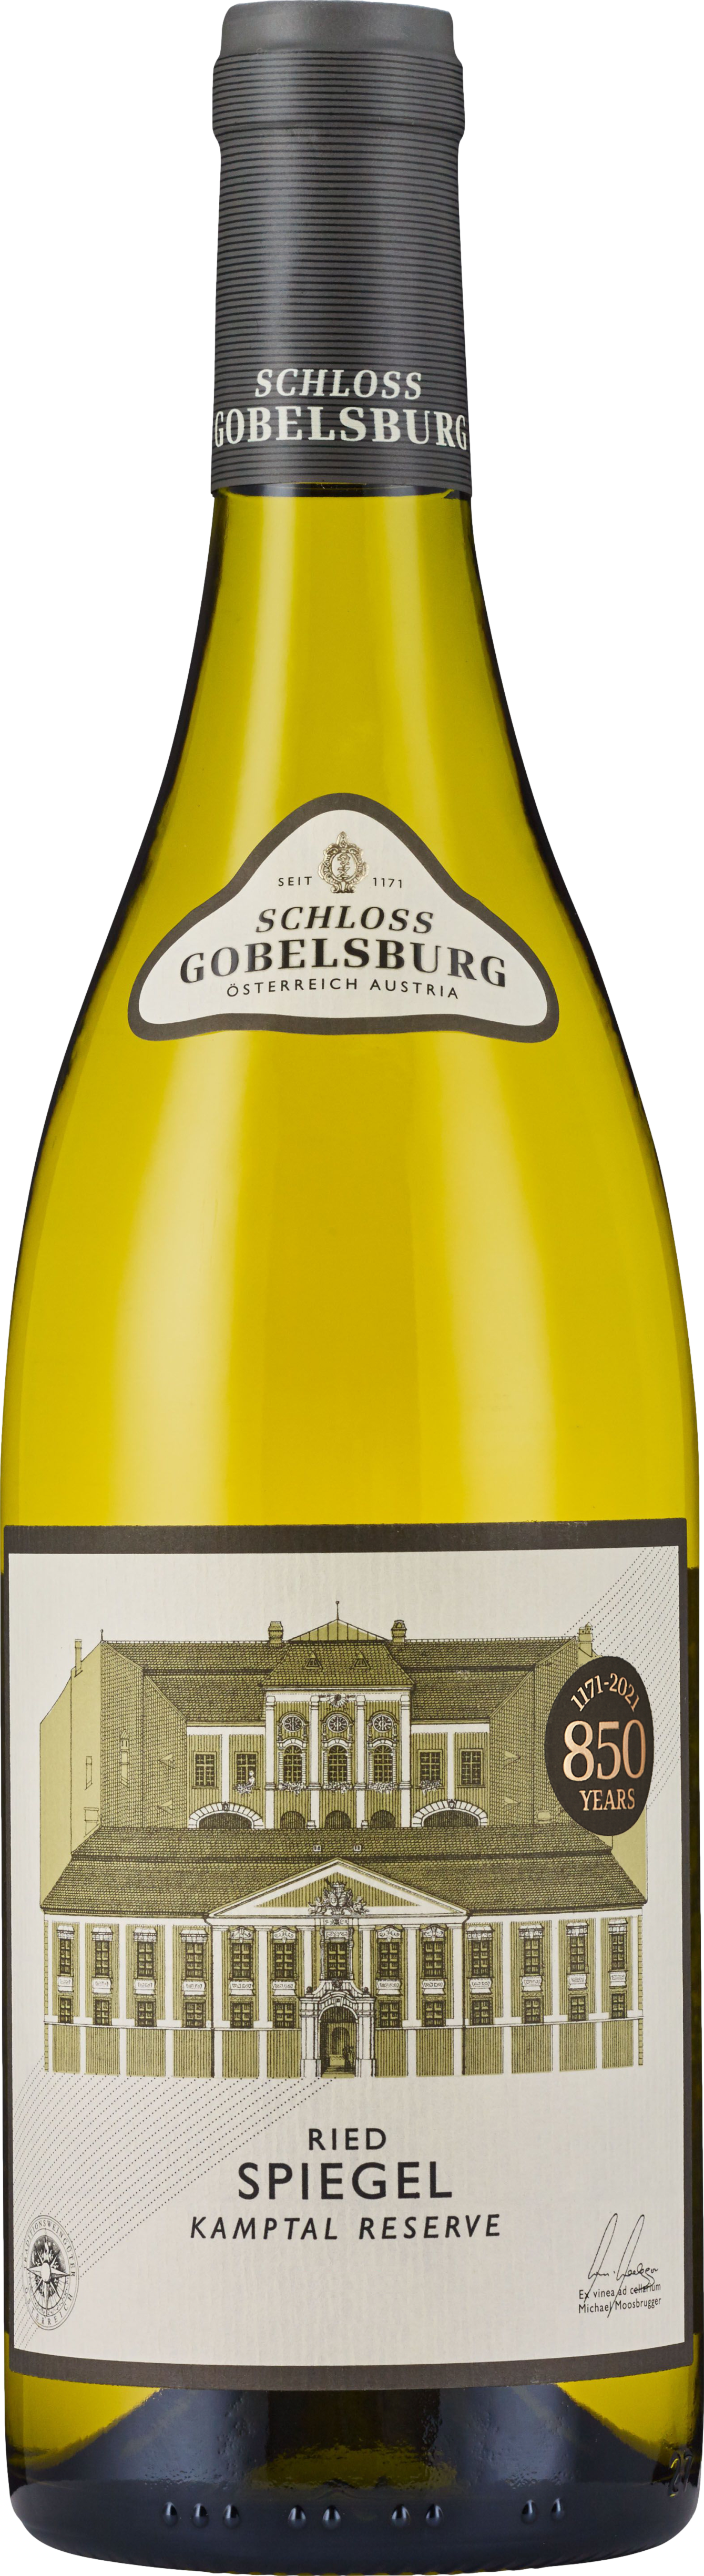 Schloss Gobelsburg Ried Spiegel Reserve Gruner Veltliner 2020 Bílé 13.5% 0.75 l